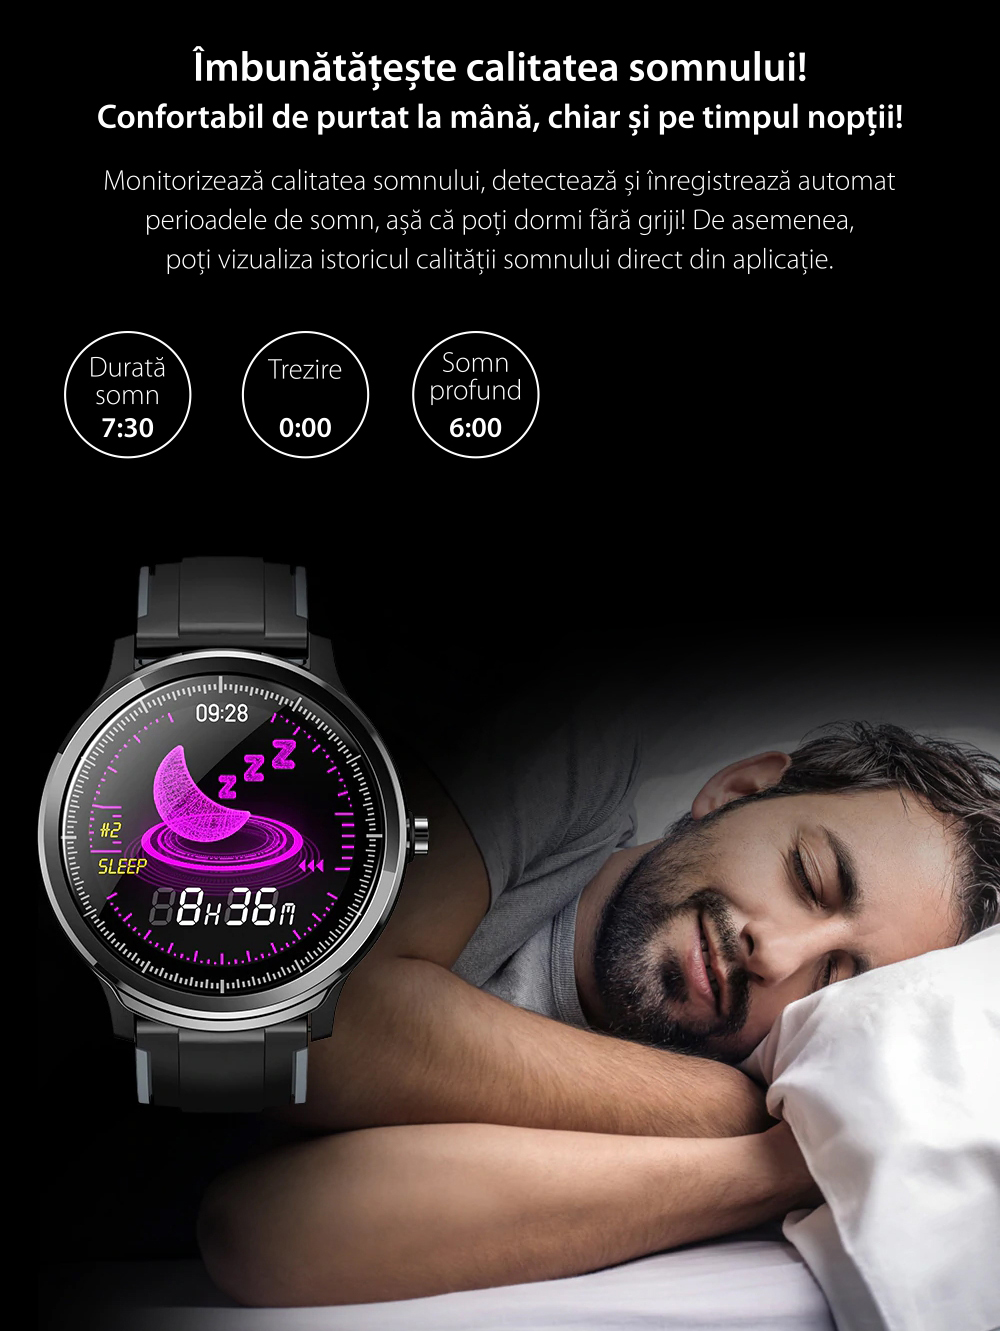 Ceas Smartwatch TKY-QS80 cu functie de monitorizare ritm cardiac, Tensiune arteriala, Nivel oxigen, Pedometru, Distanta parcursa, Calorii arse, Notificari Apel/ SMS, Negru-Gri